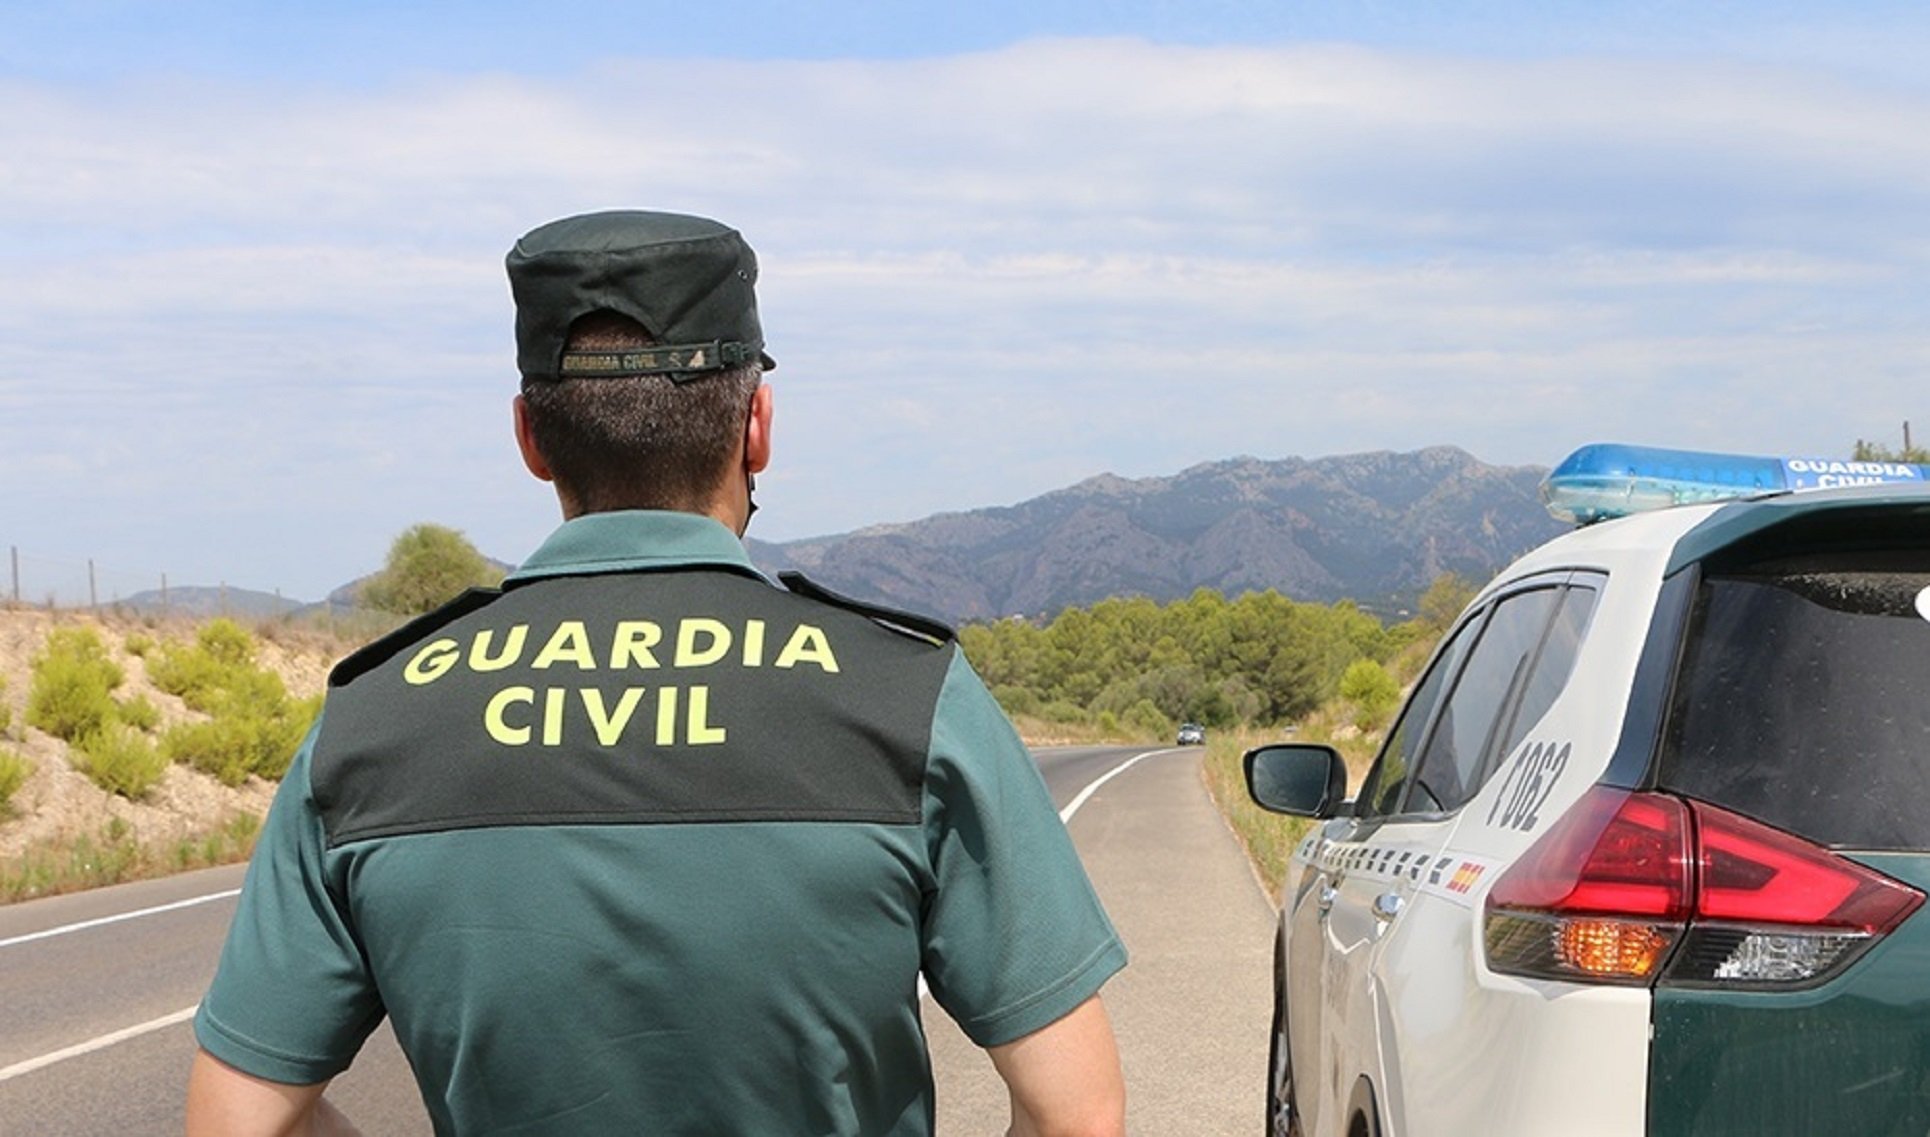 Un guàrdia civil destinat a Eivissa denuncia que viu en una furgoneta perquè no pot pagar un pis